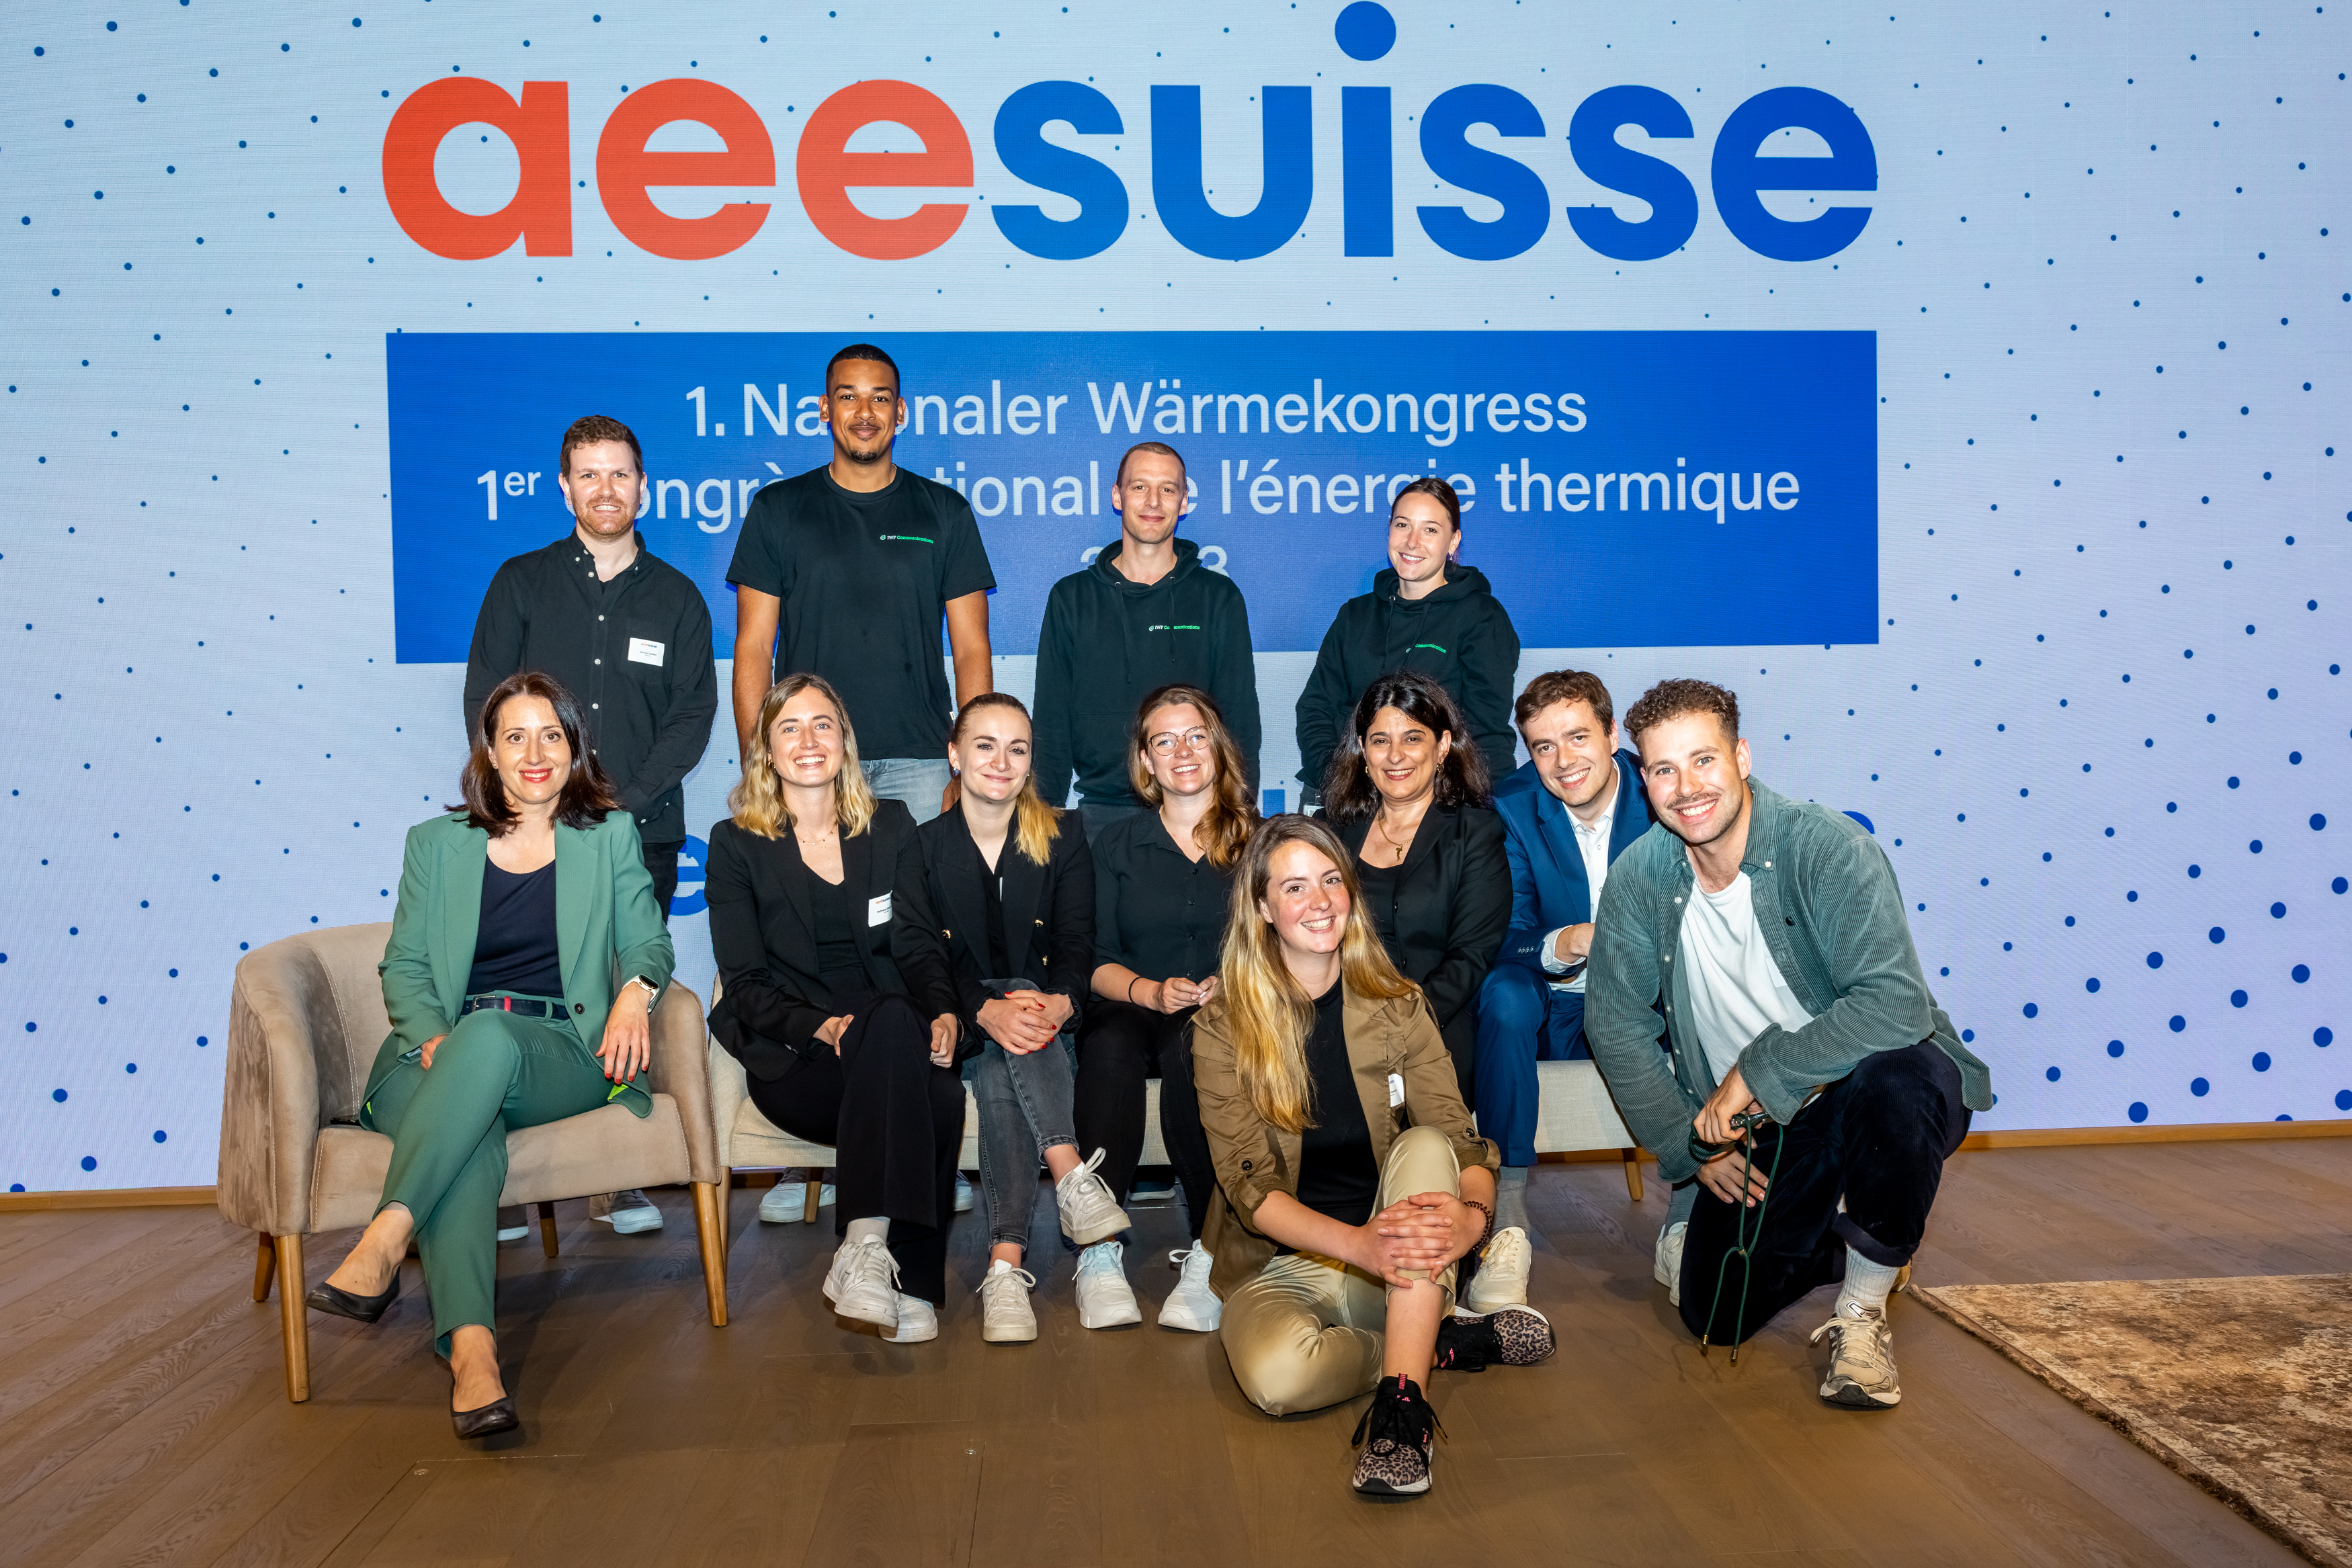 1. Nationaler Wärmekongress AEE Suisse